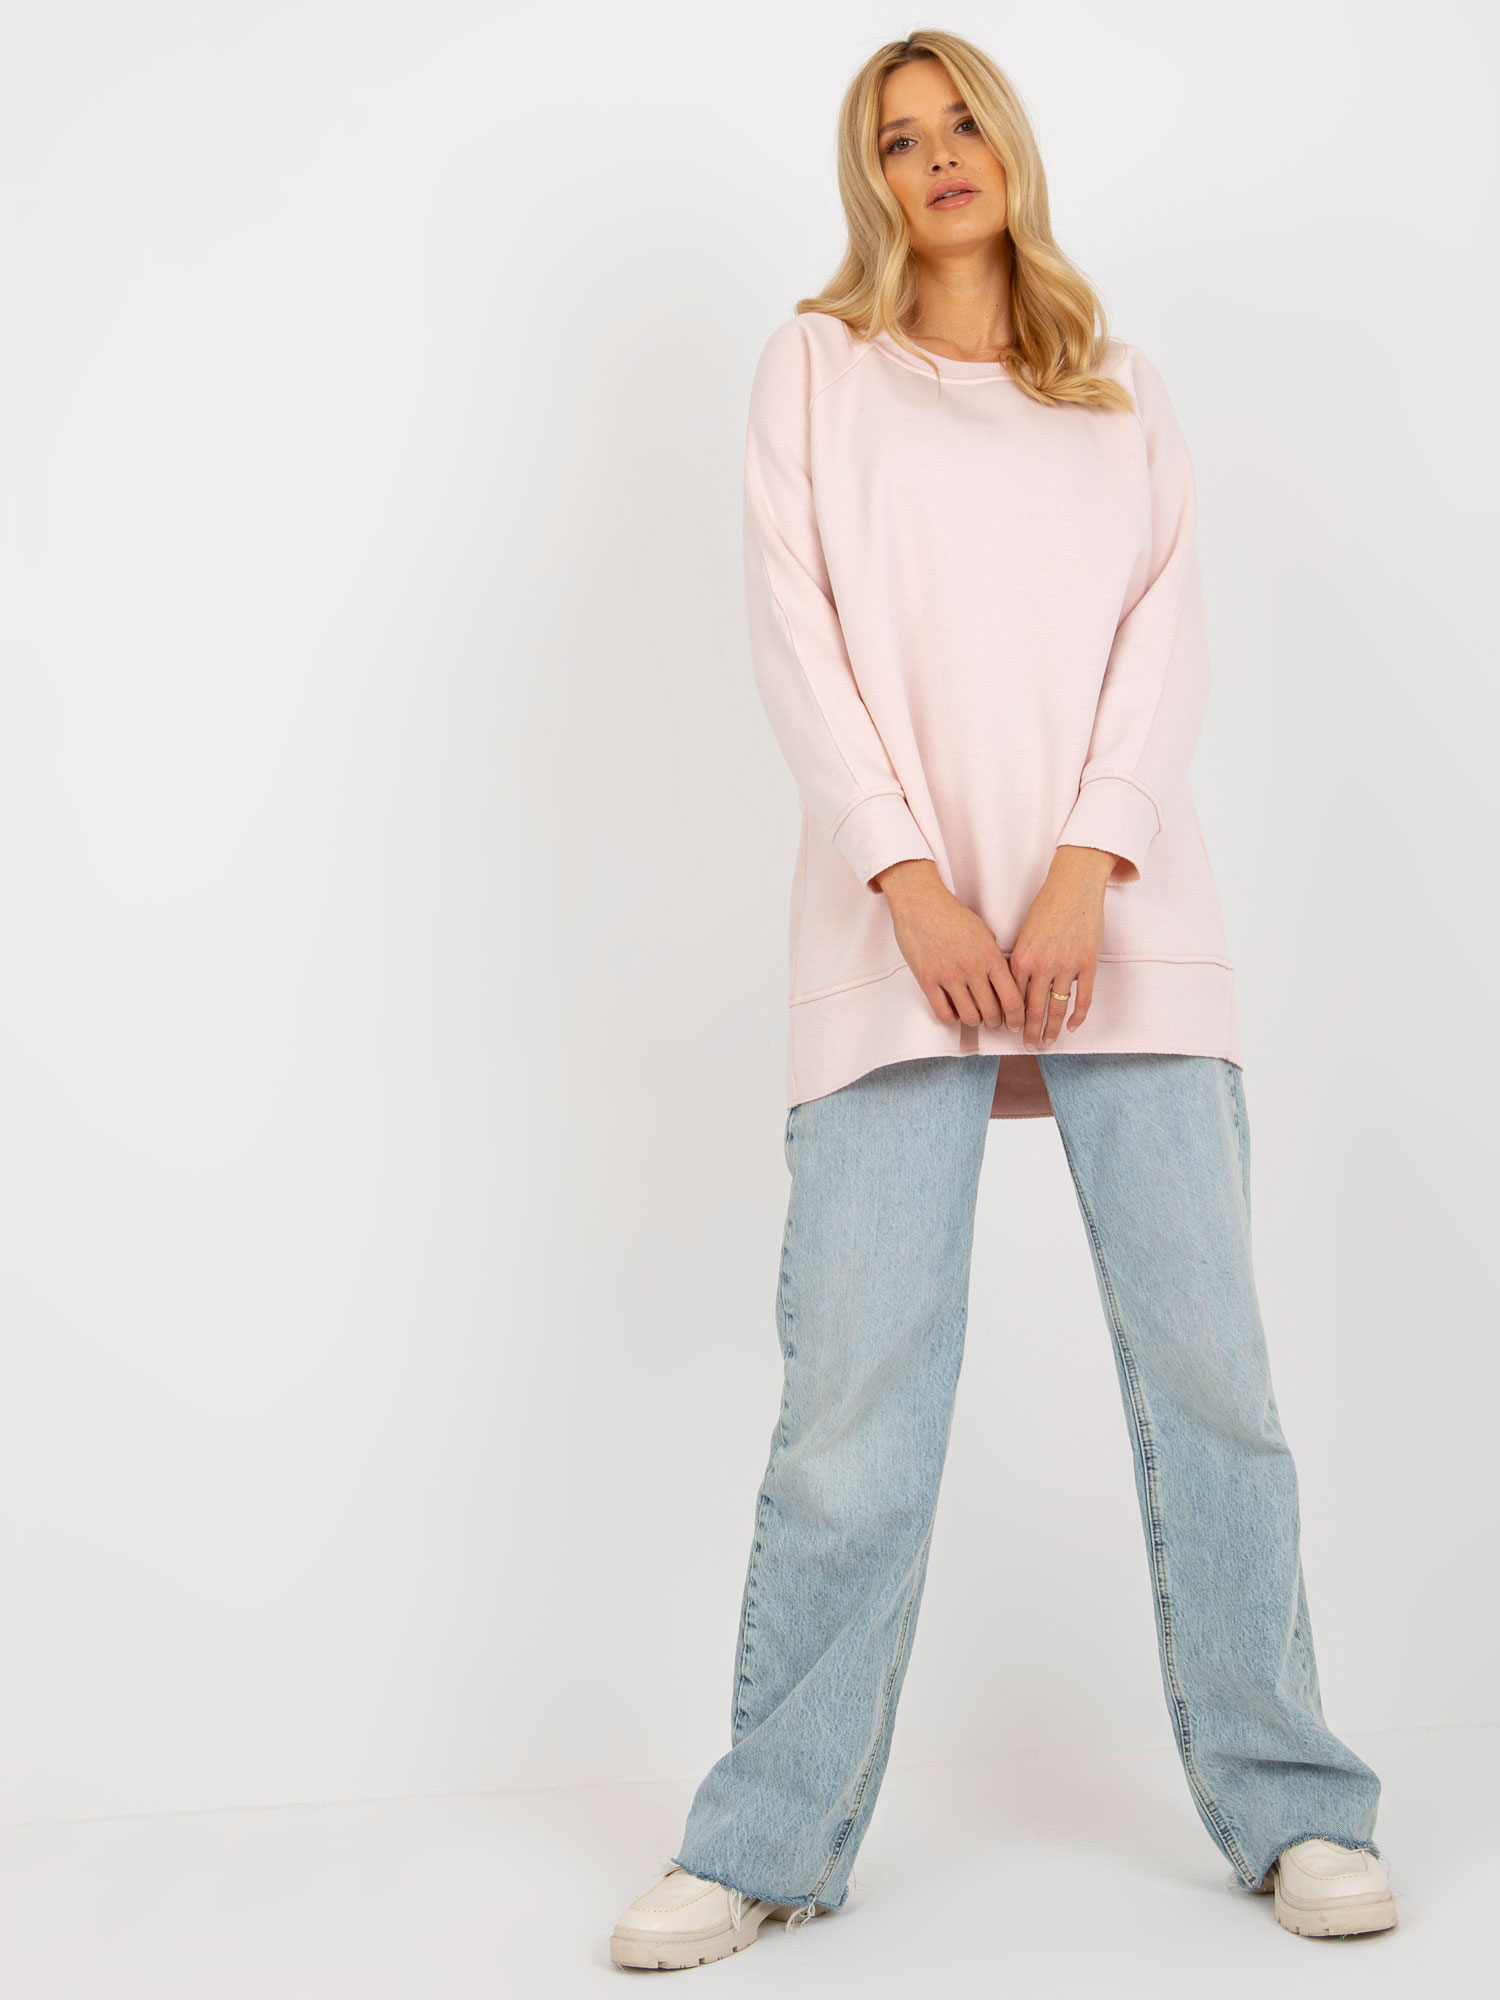 Light Pink Basic Sweatshirt With Round Neckline